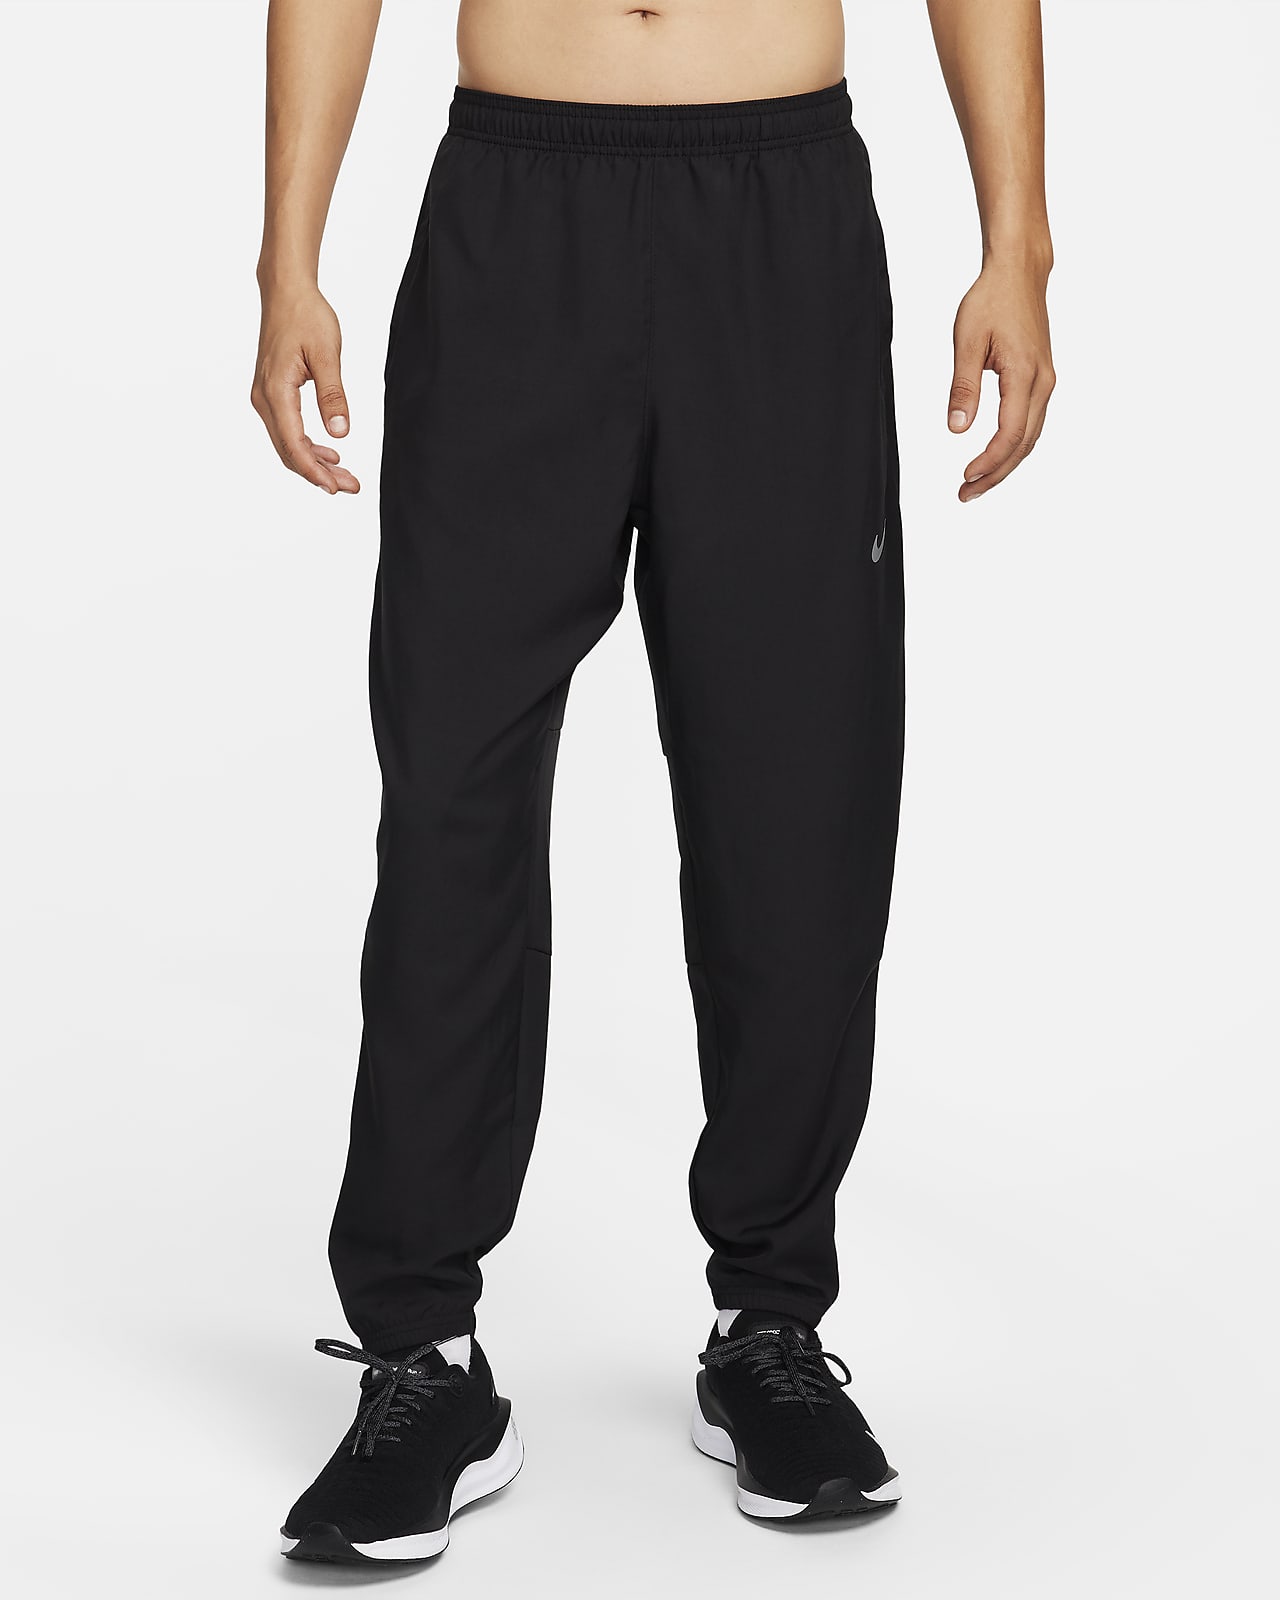 Nike Challenger Pantalons de teixit Woven Dri-FIT de running - Home